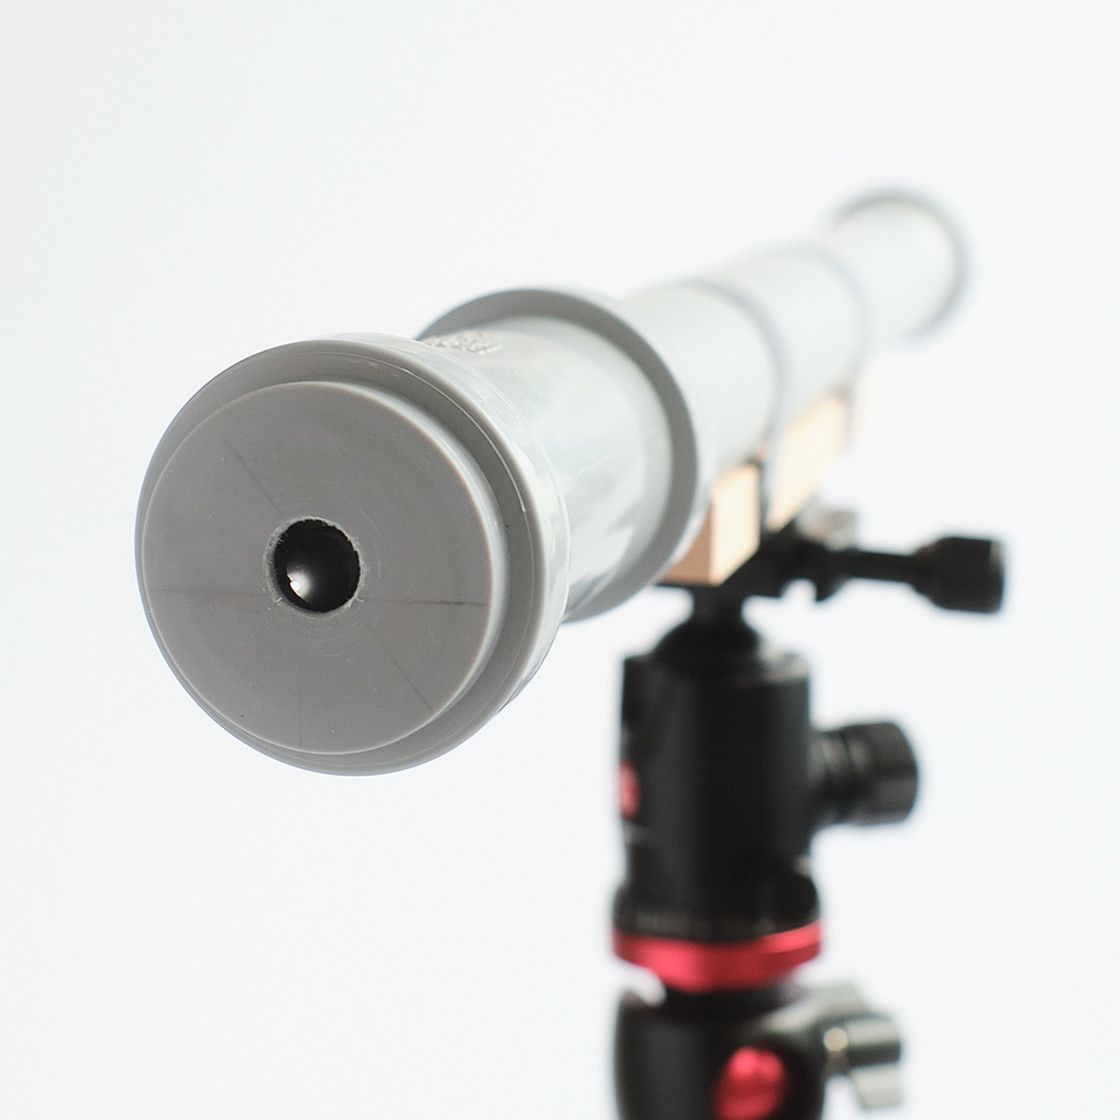 Le télescope du plombier - AstroMedia